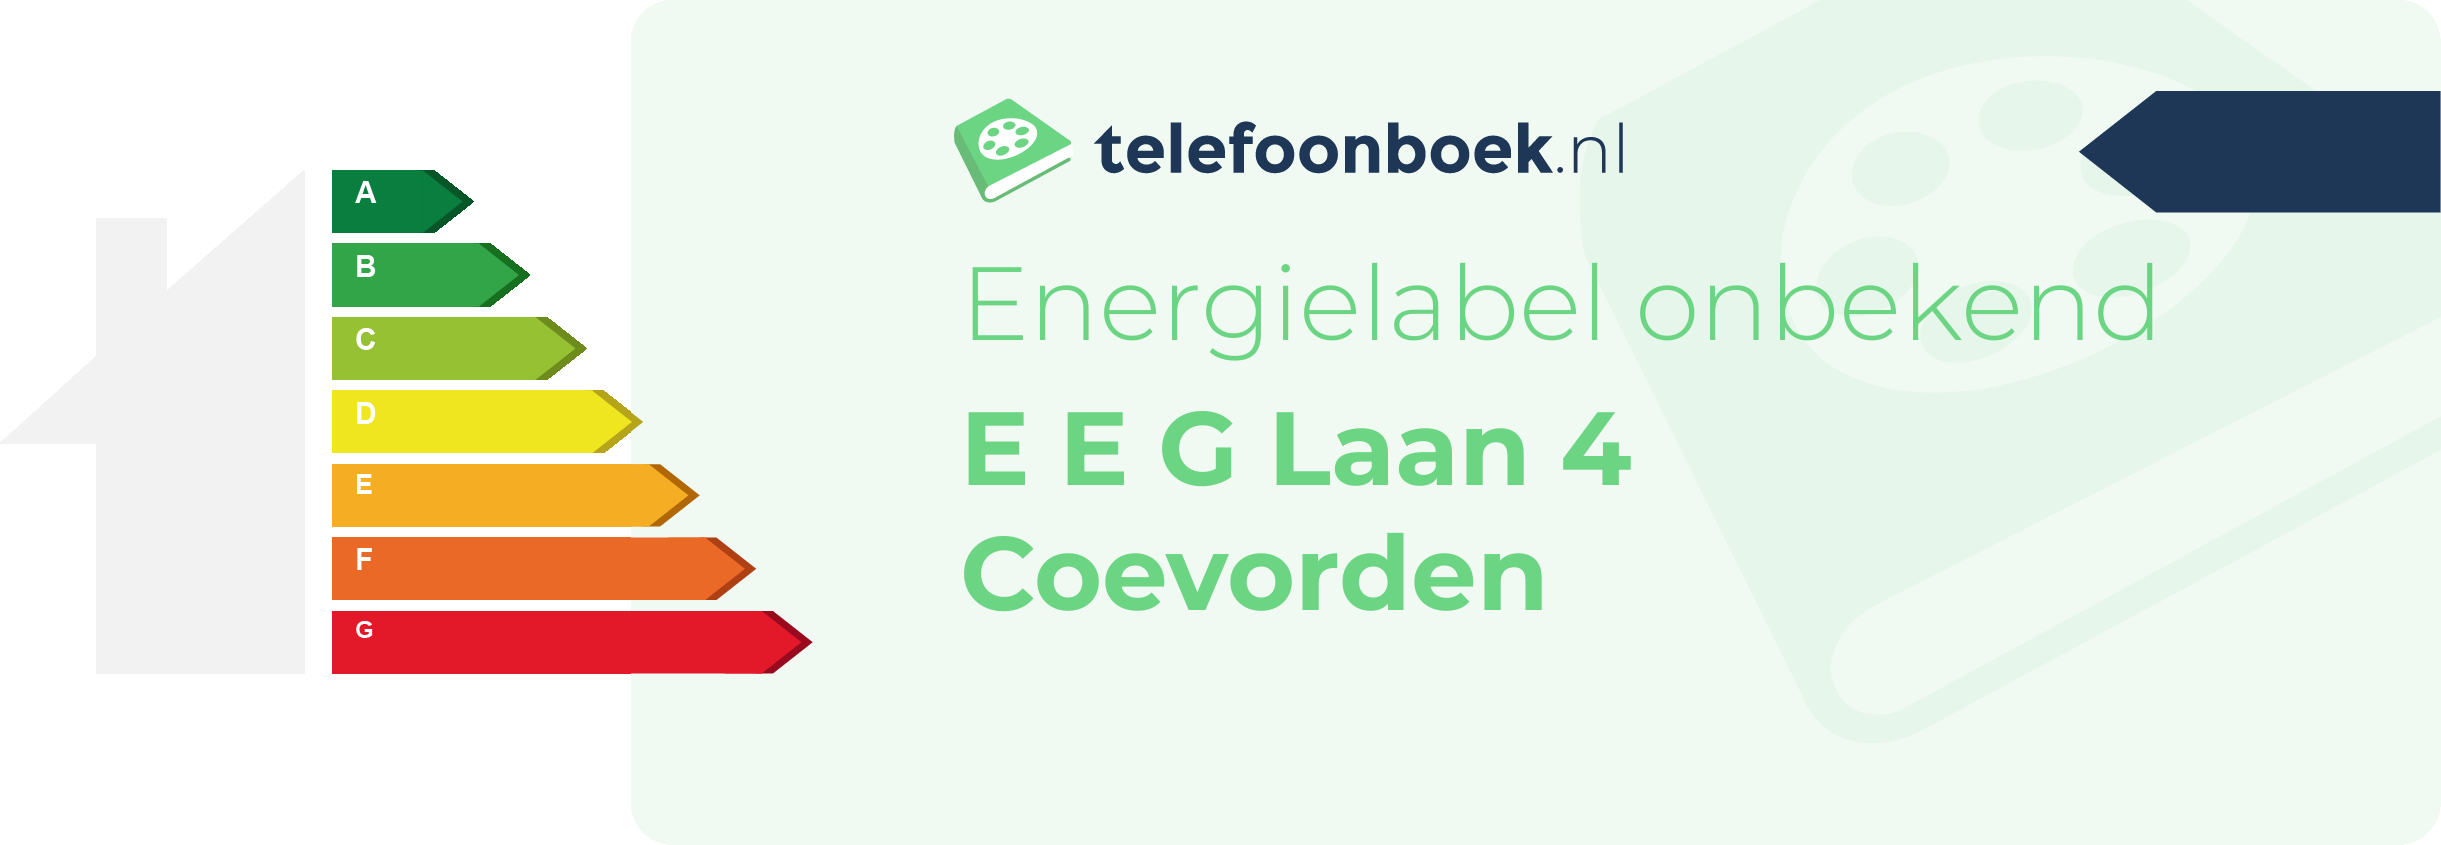 Energielabel E E G Laan 4 Coevorden